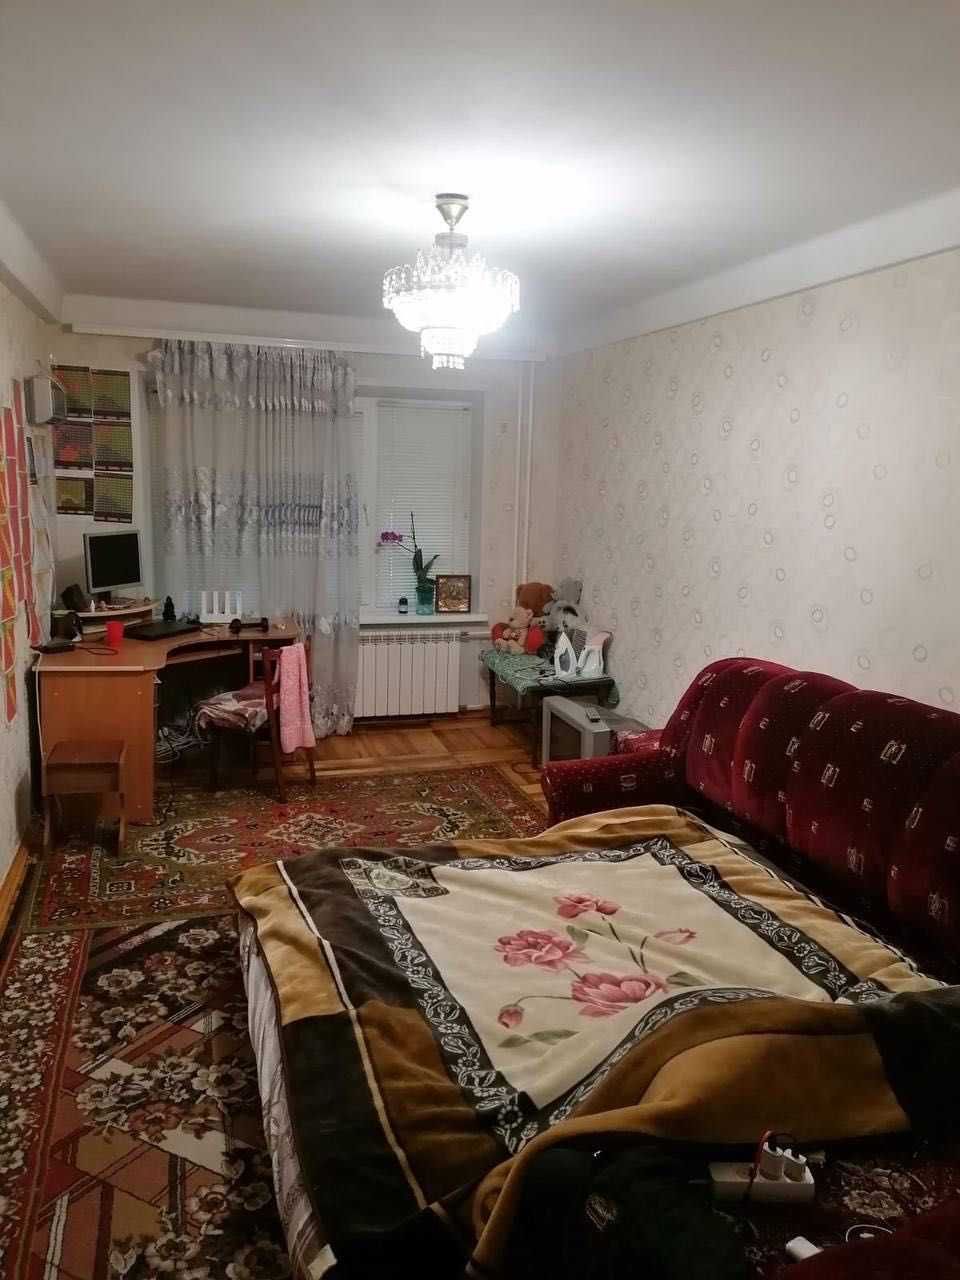 Продается 3-х комн. квартира возле Золотой Осени, ул. Чаривная